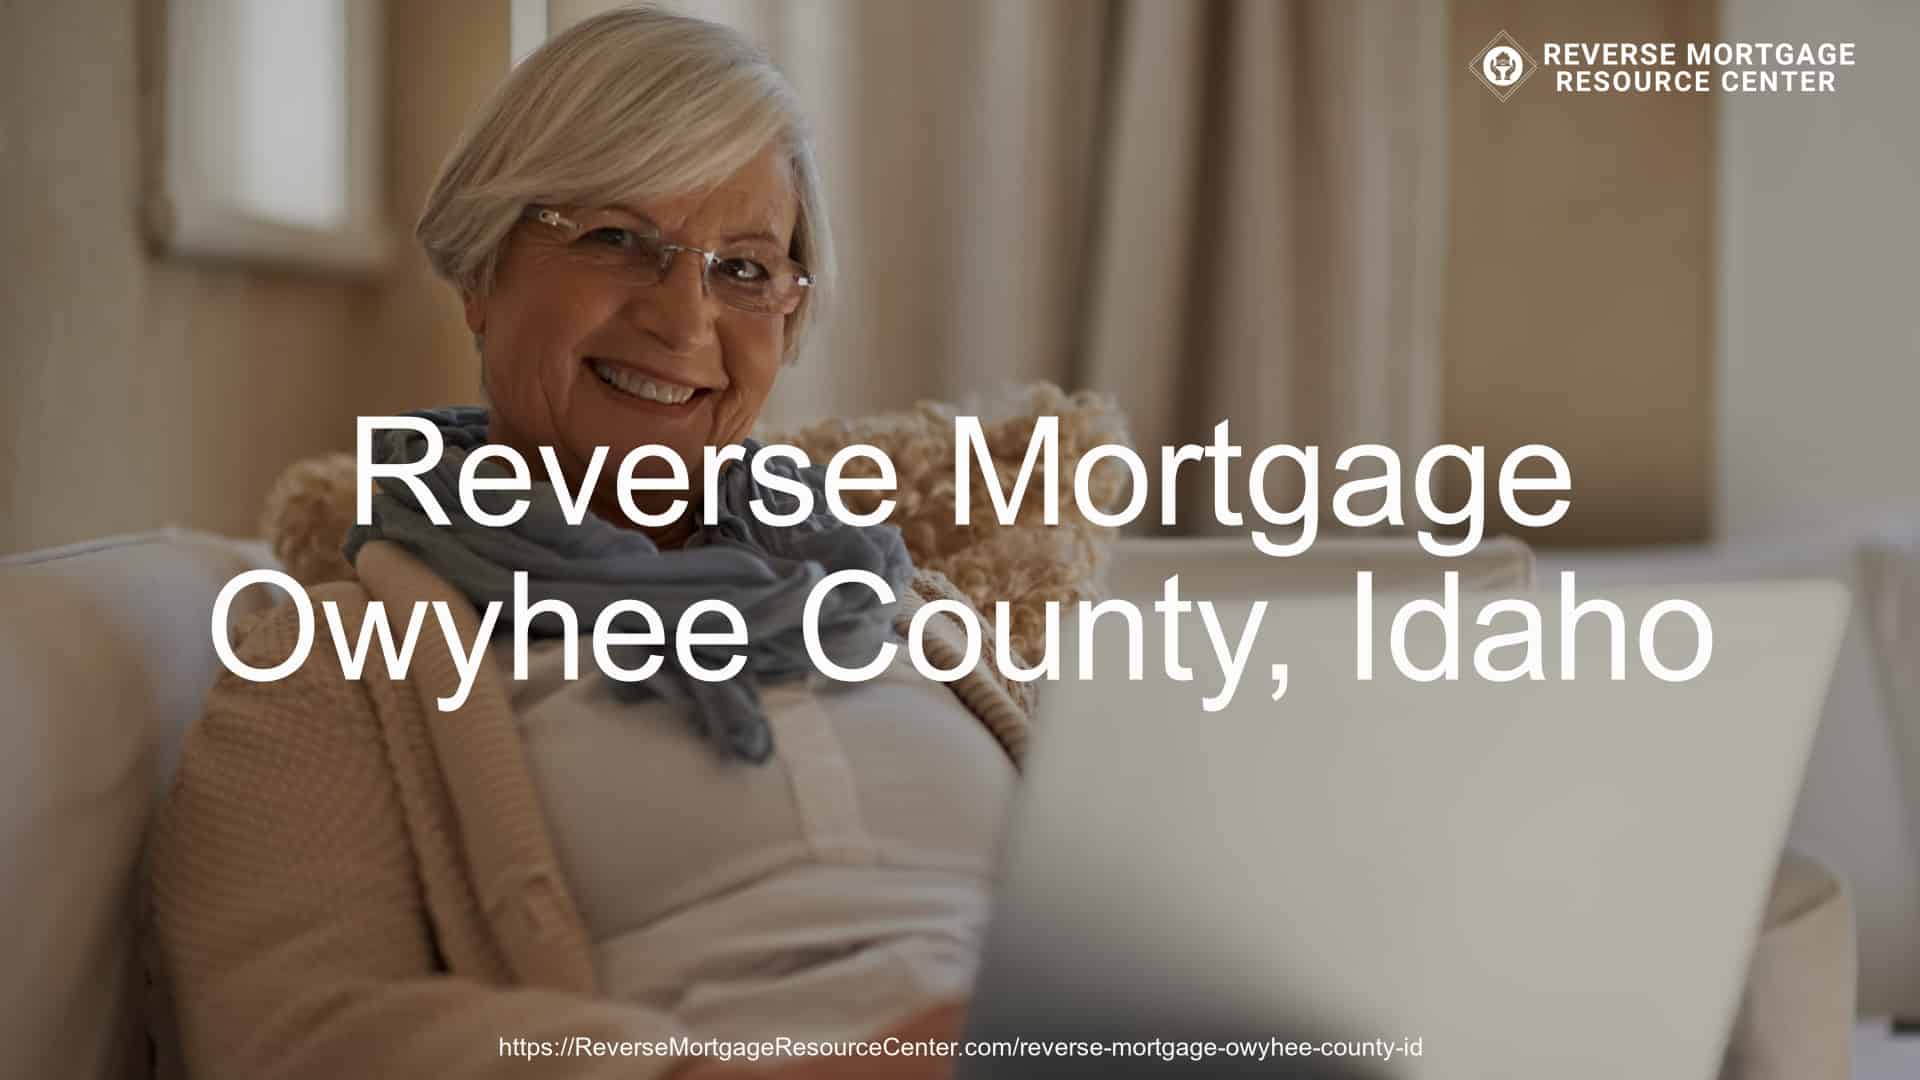 Reverse Mortgage Loans in Owyhee County Idaho